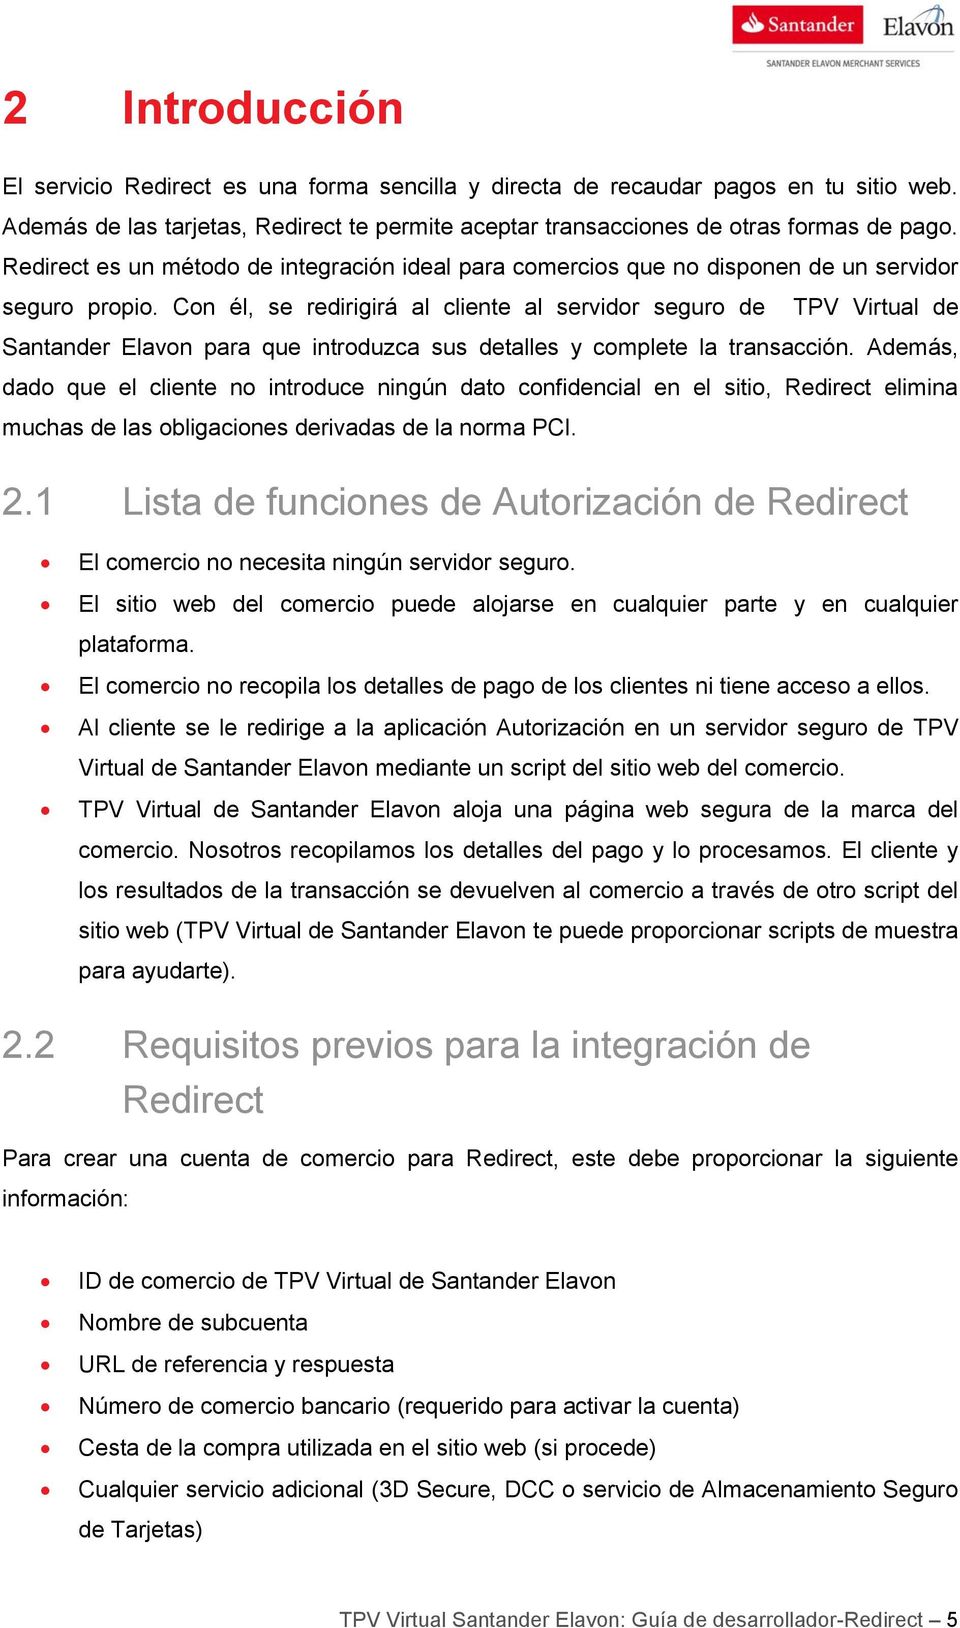 Con él, se redirigirá al cliente al servidor seguro de TPV Virtual de Santander Elavon para que introduzca sus detalles y complete la transacción.